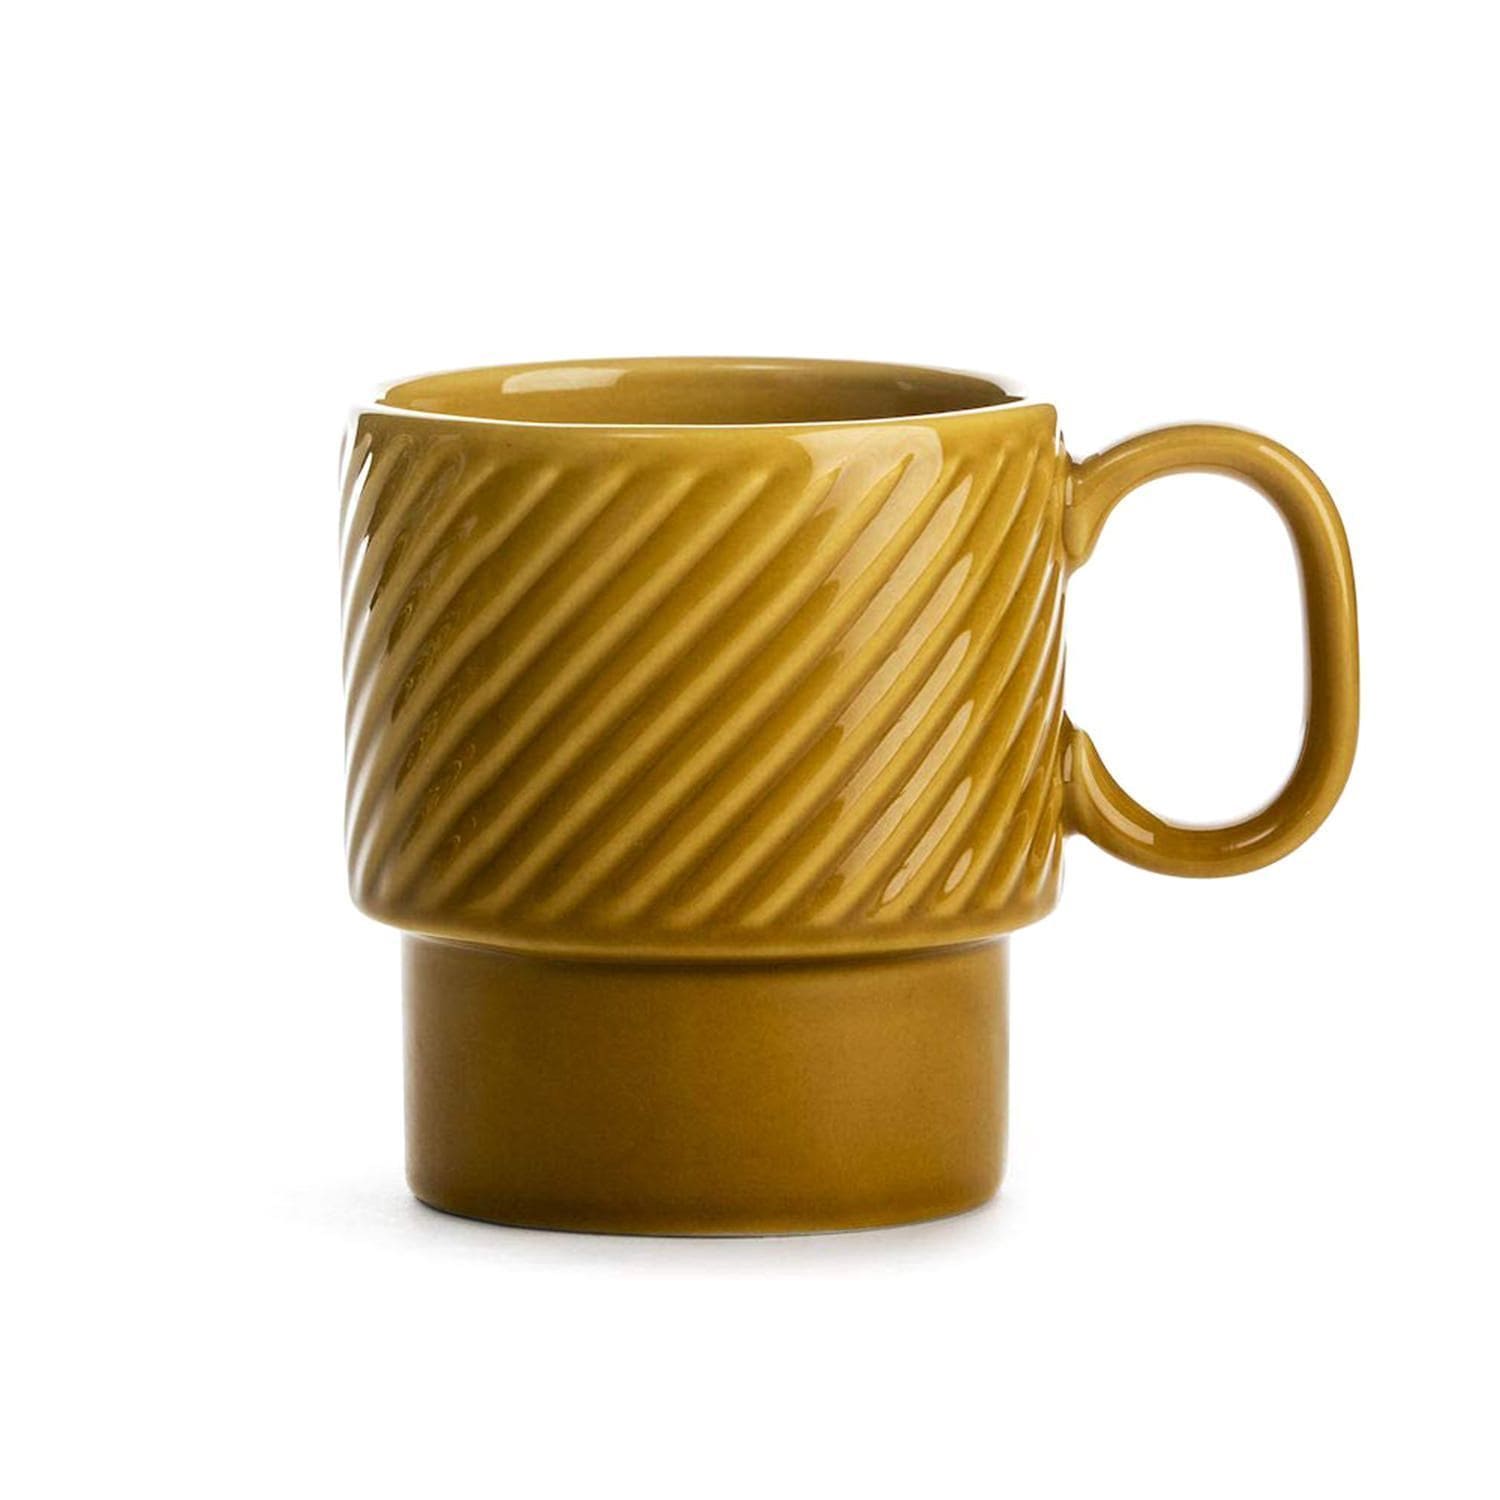 Sagaform Coffee & More Coffee Mug Set of 2 - Yellow, 250 ml - SA5017876 - Jashanmal Home